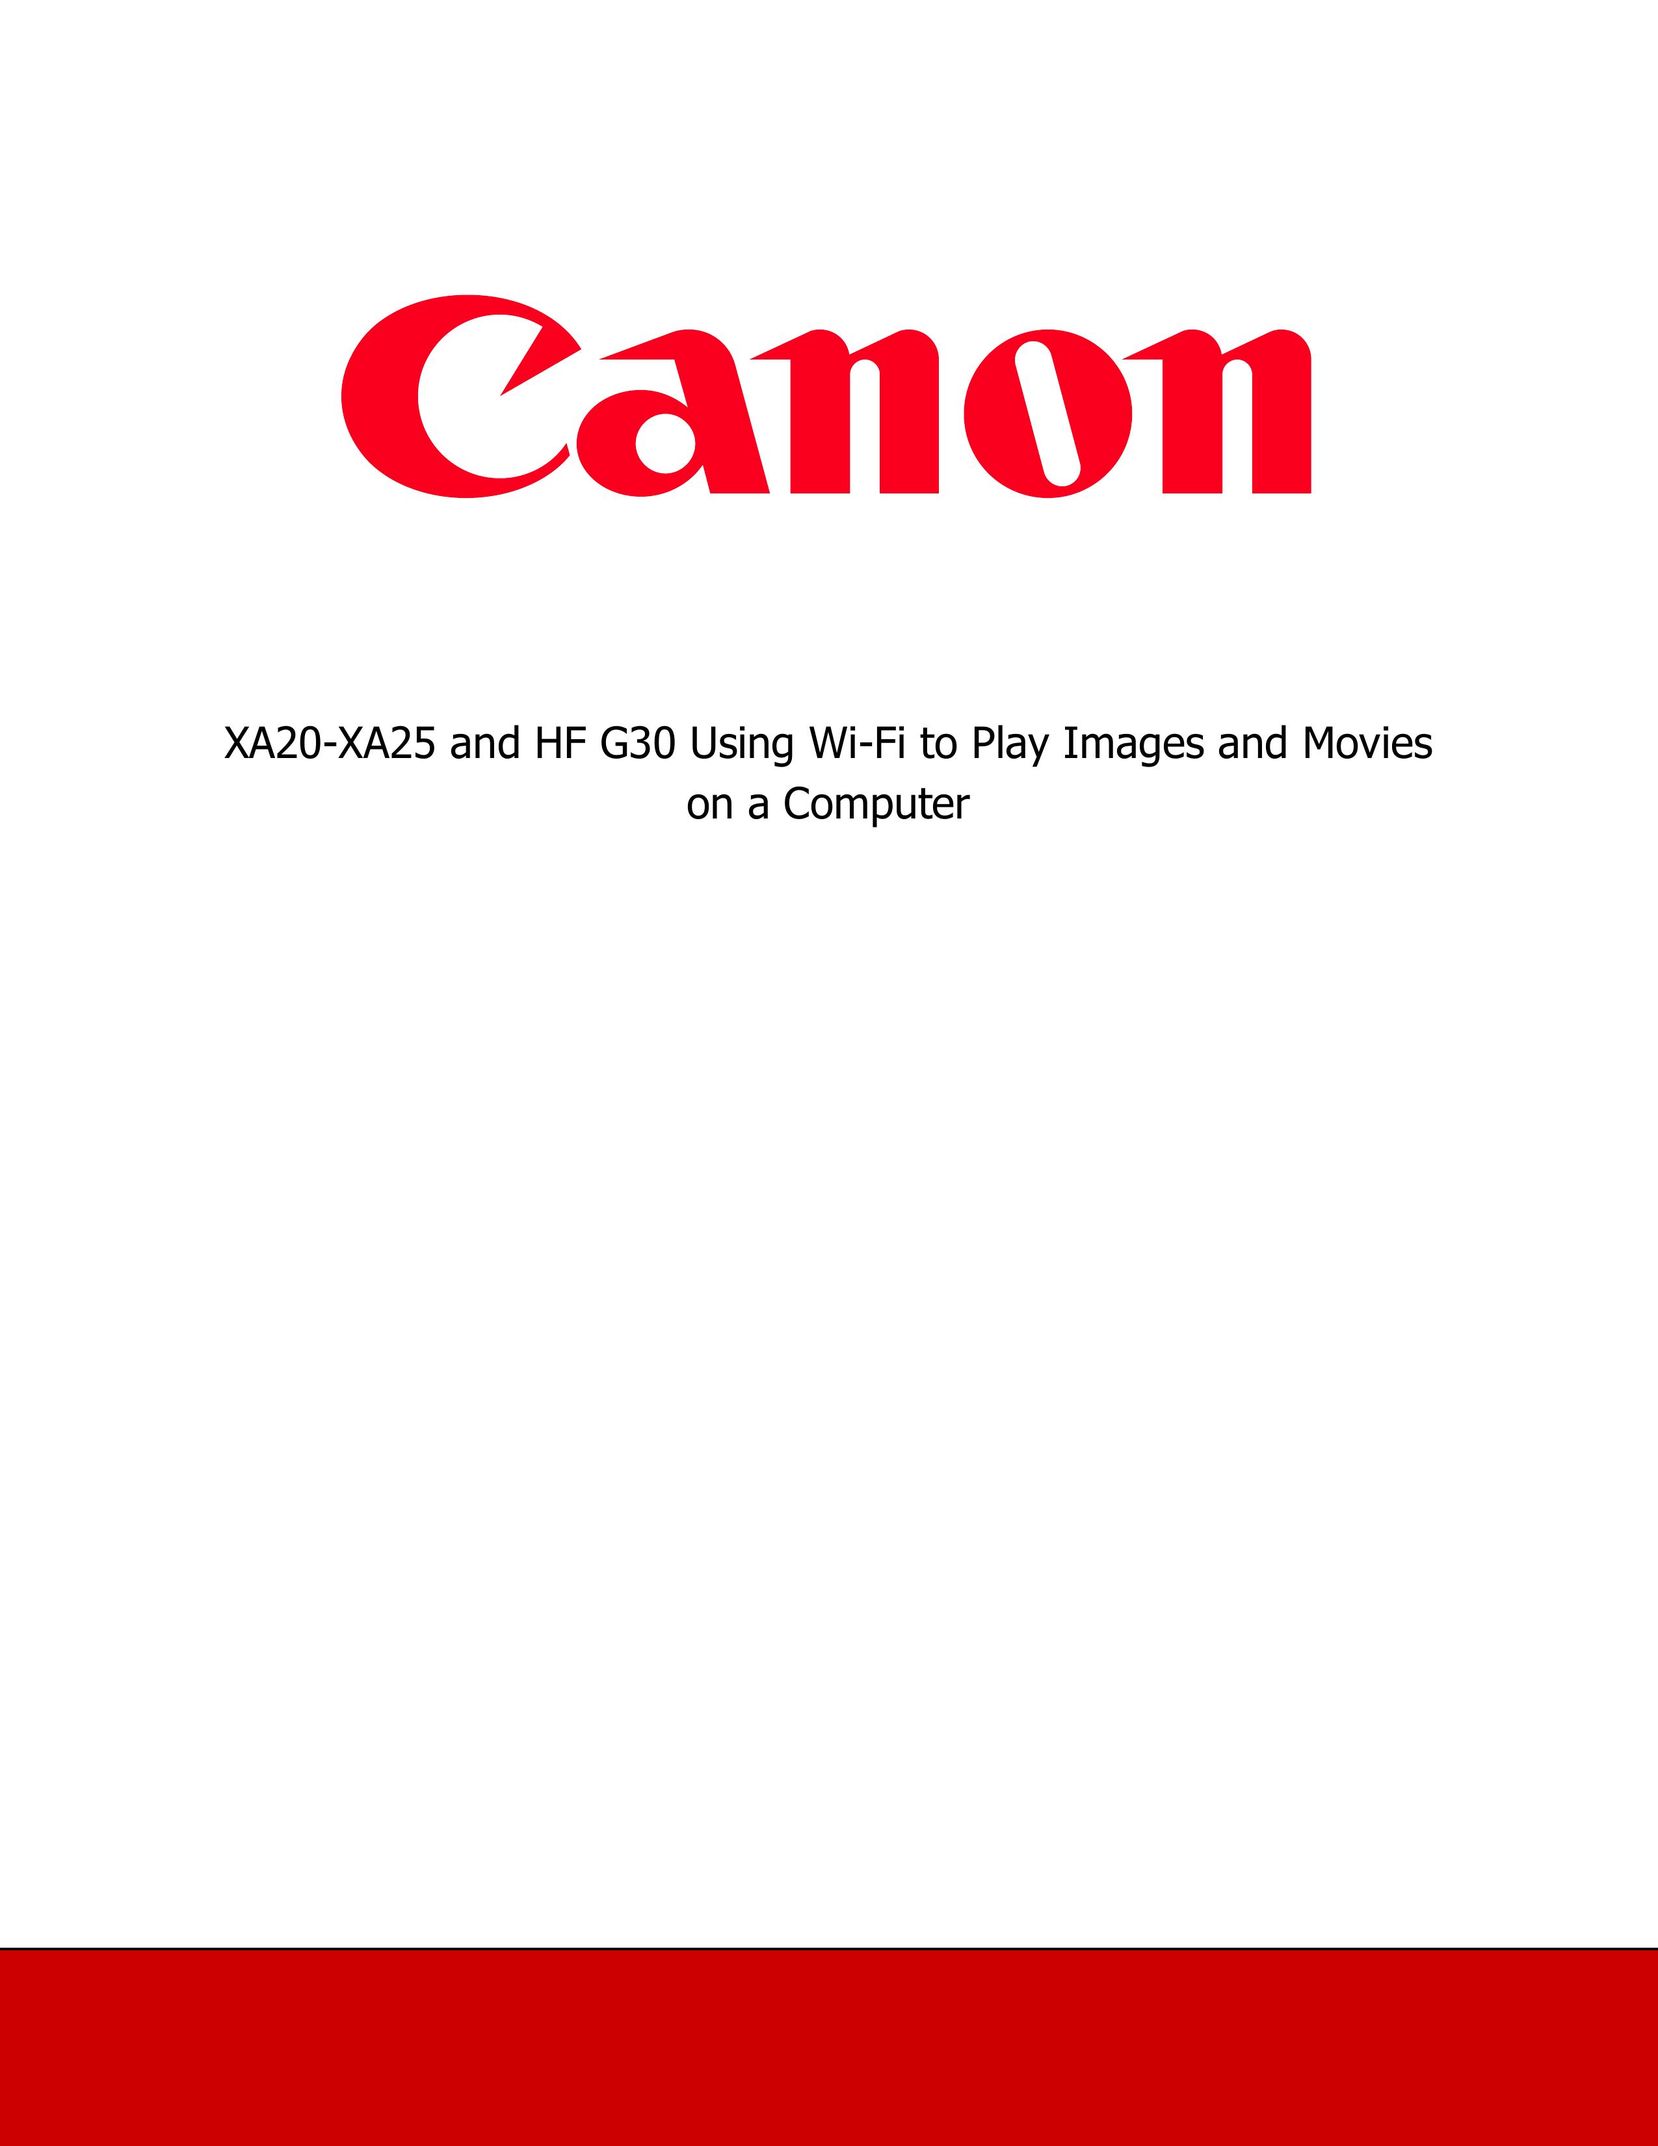 Canon XA20 Home Theater Server User Manual